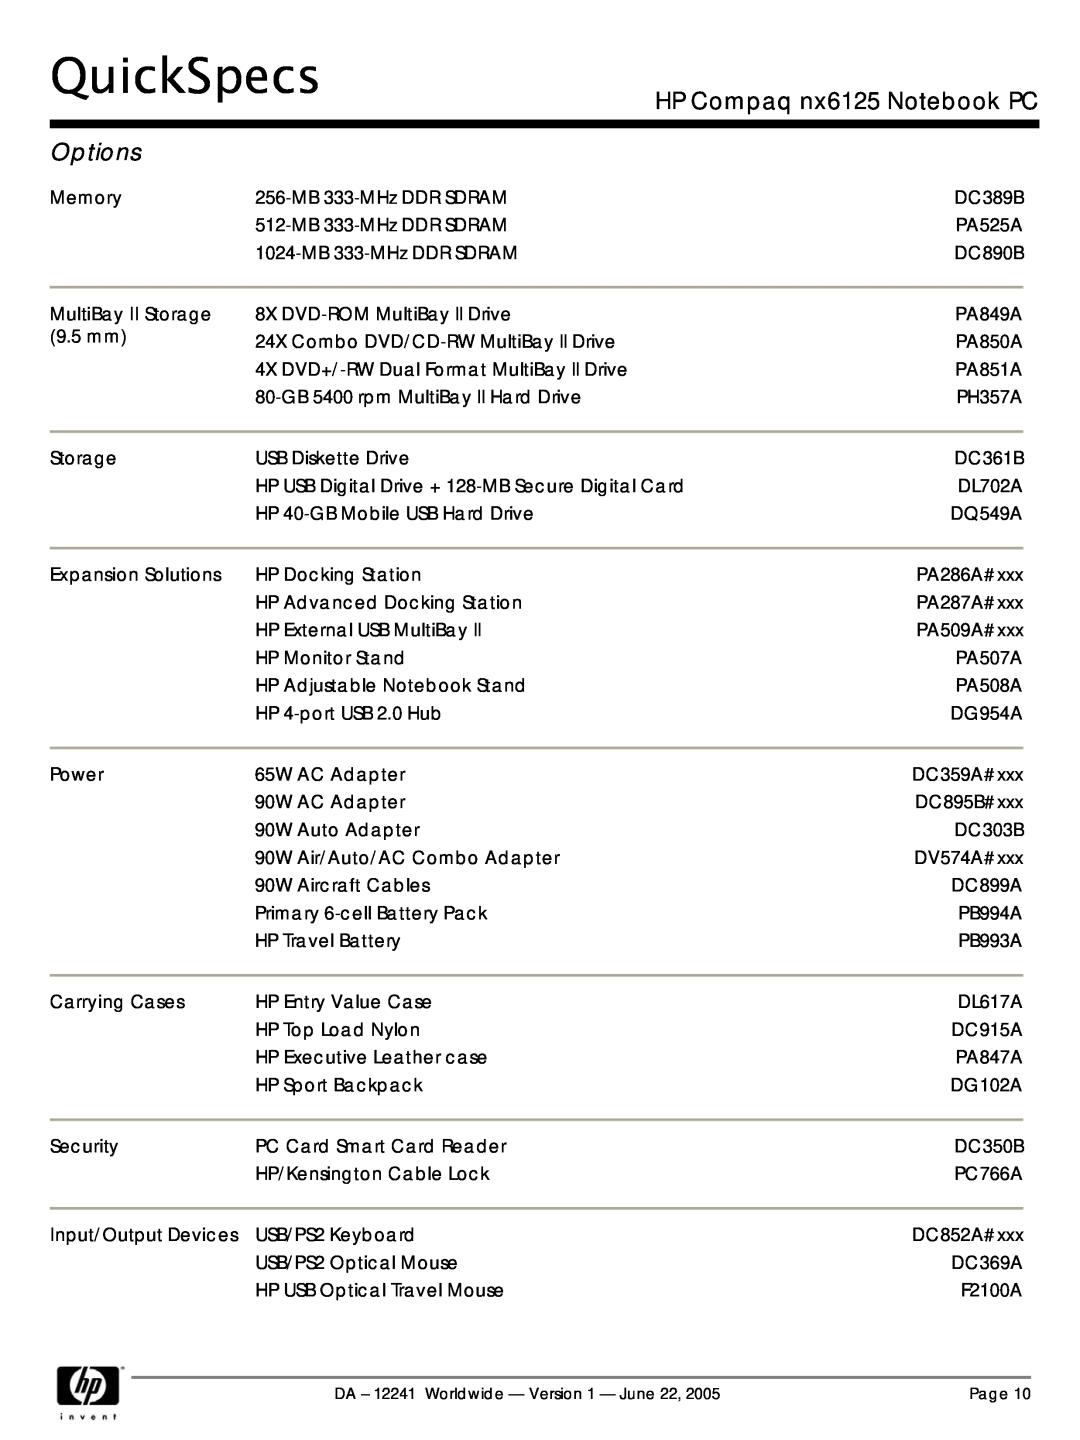 AMD DA - 12241 manual Options, QuickSpecs, HP Compaq nx6125 Notebook PC 